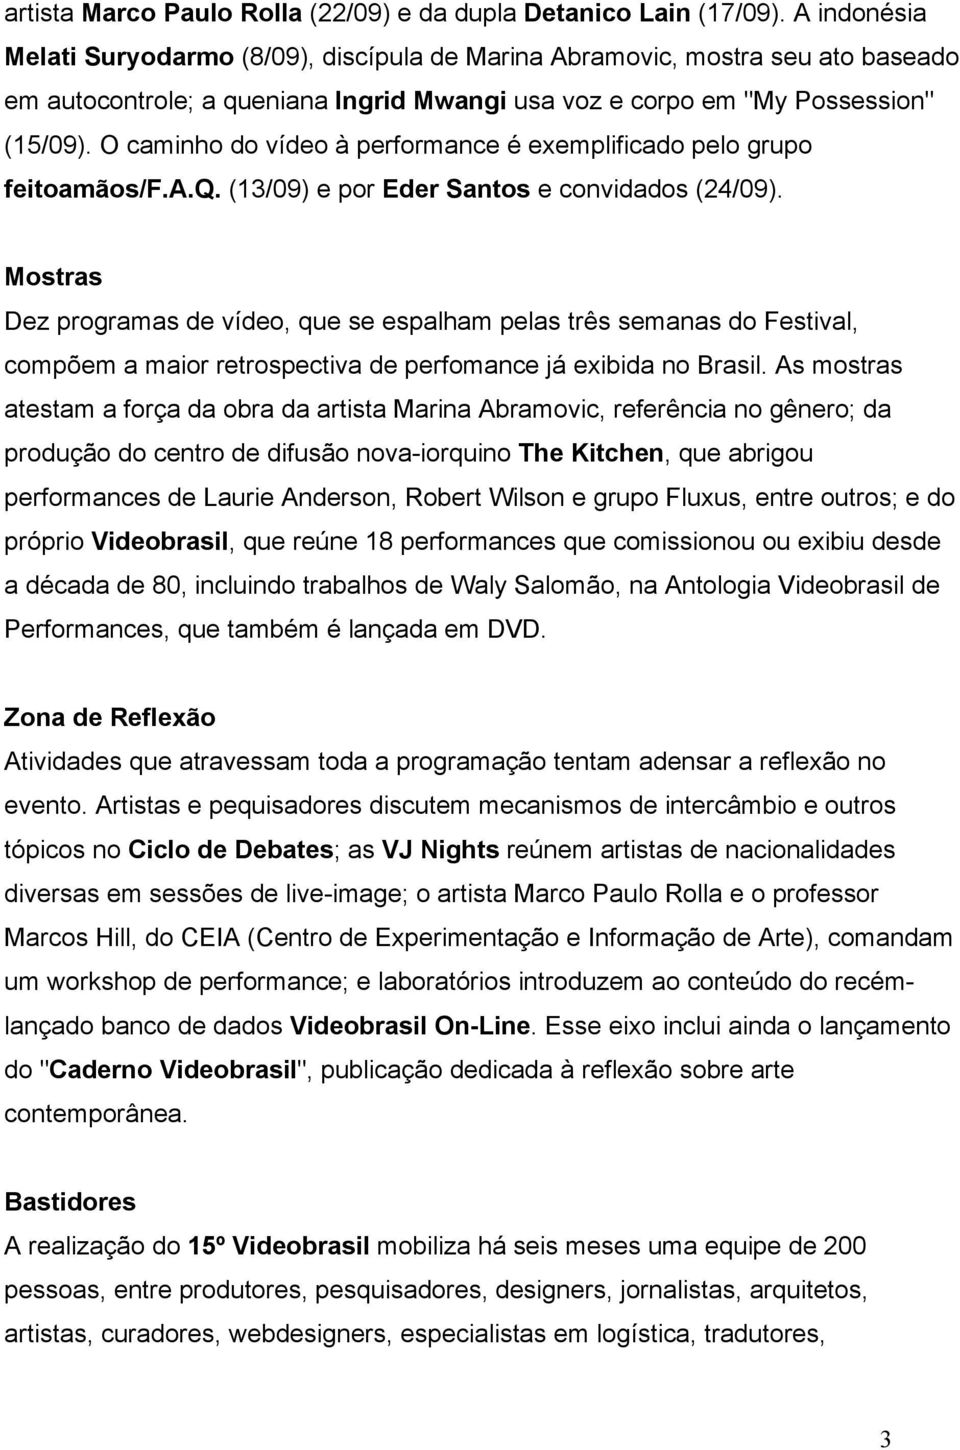 O caminho do vídeo à performance é exemplificado pelo grupo feitoamãos/f.a.q. (13/09) e por Eder Santos e convidados (24/09).